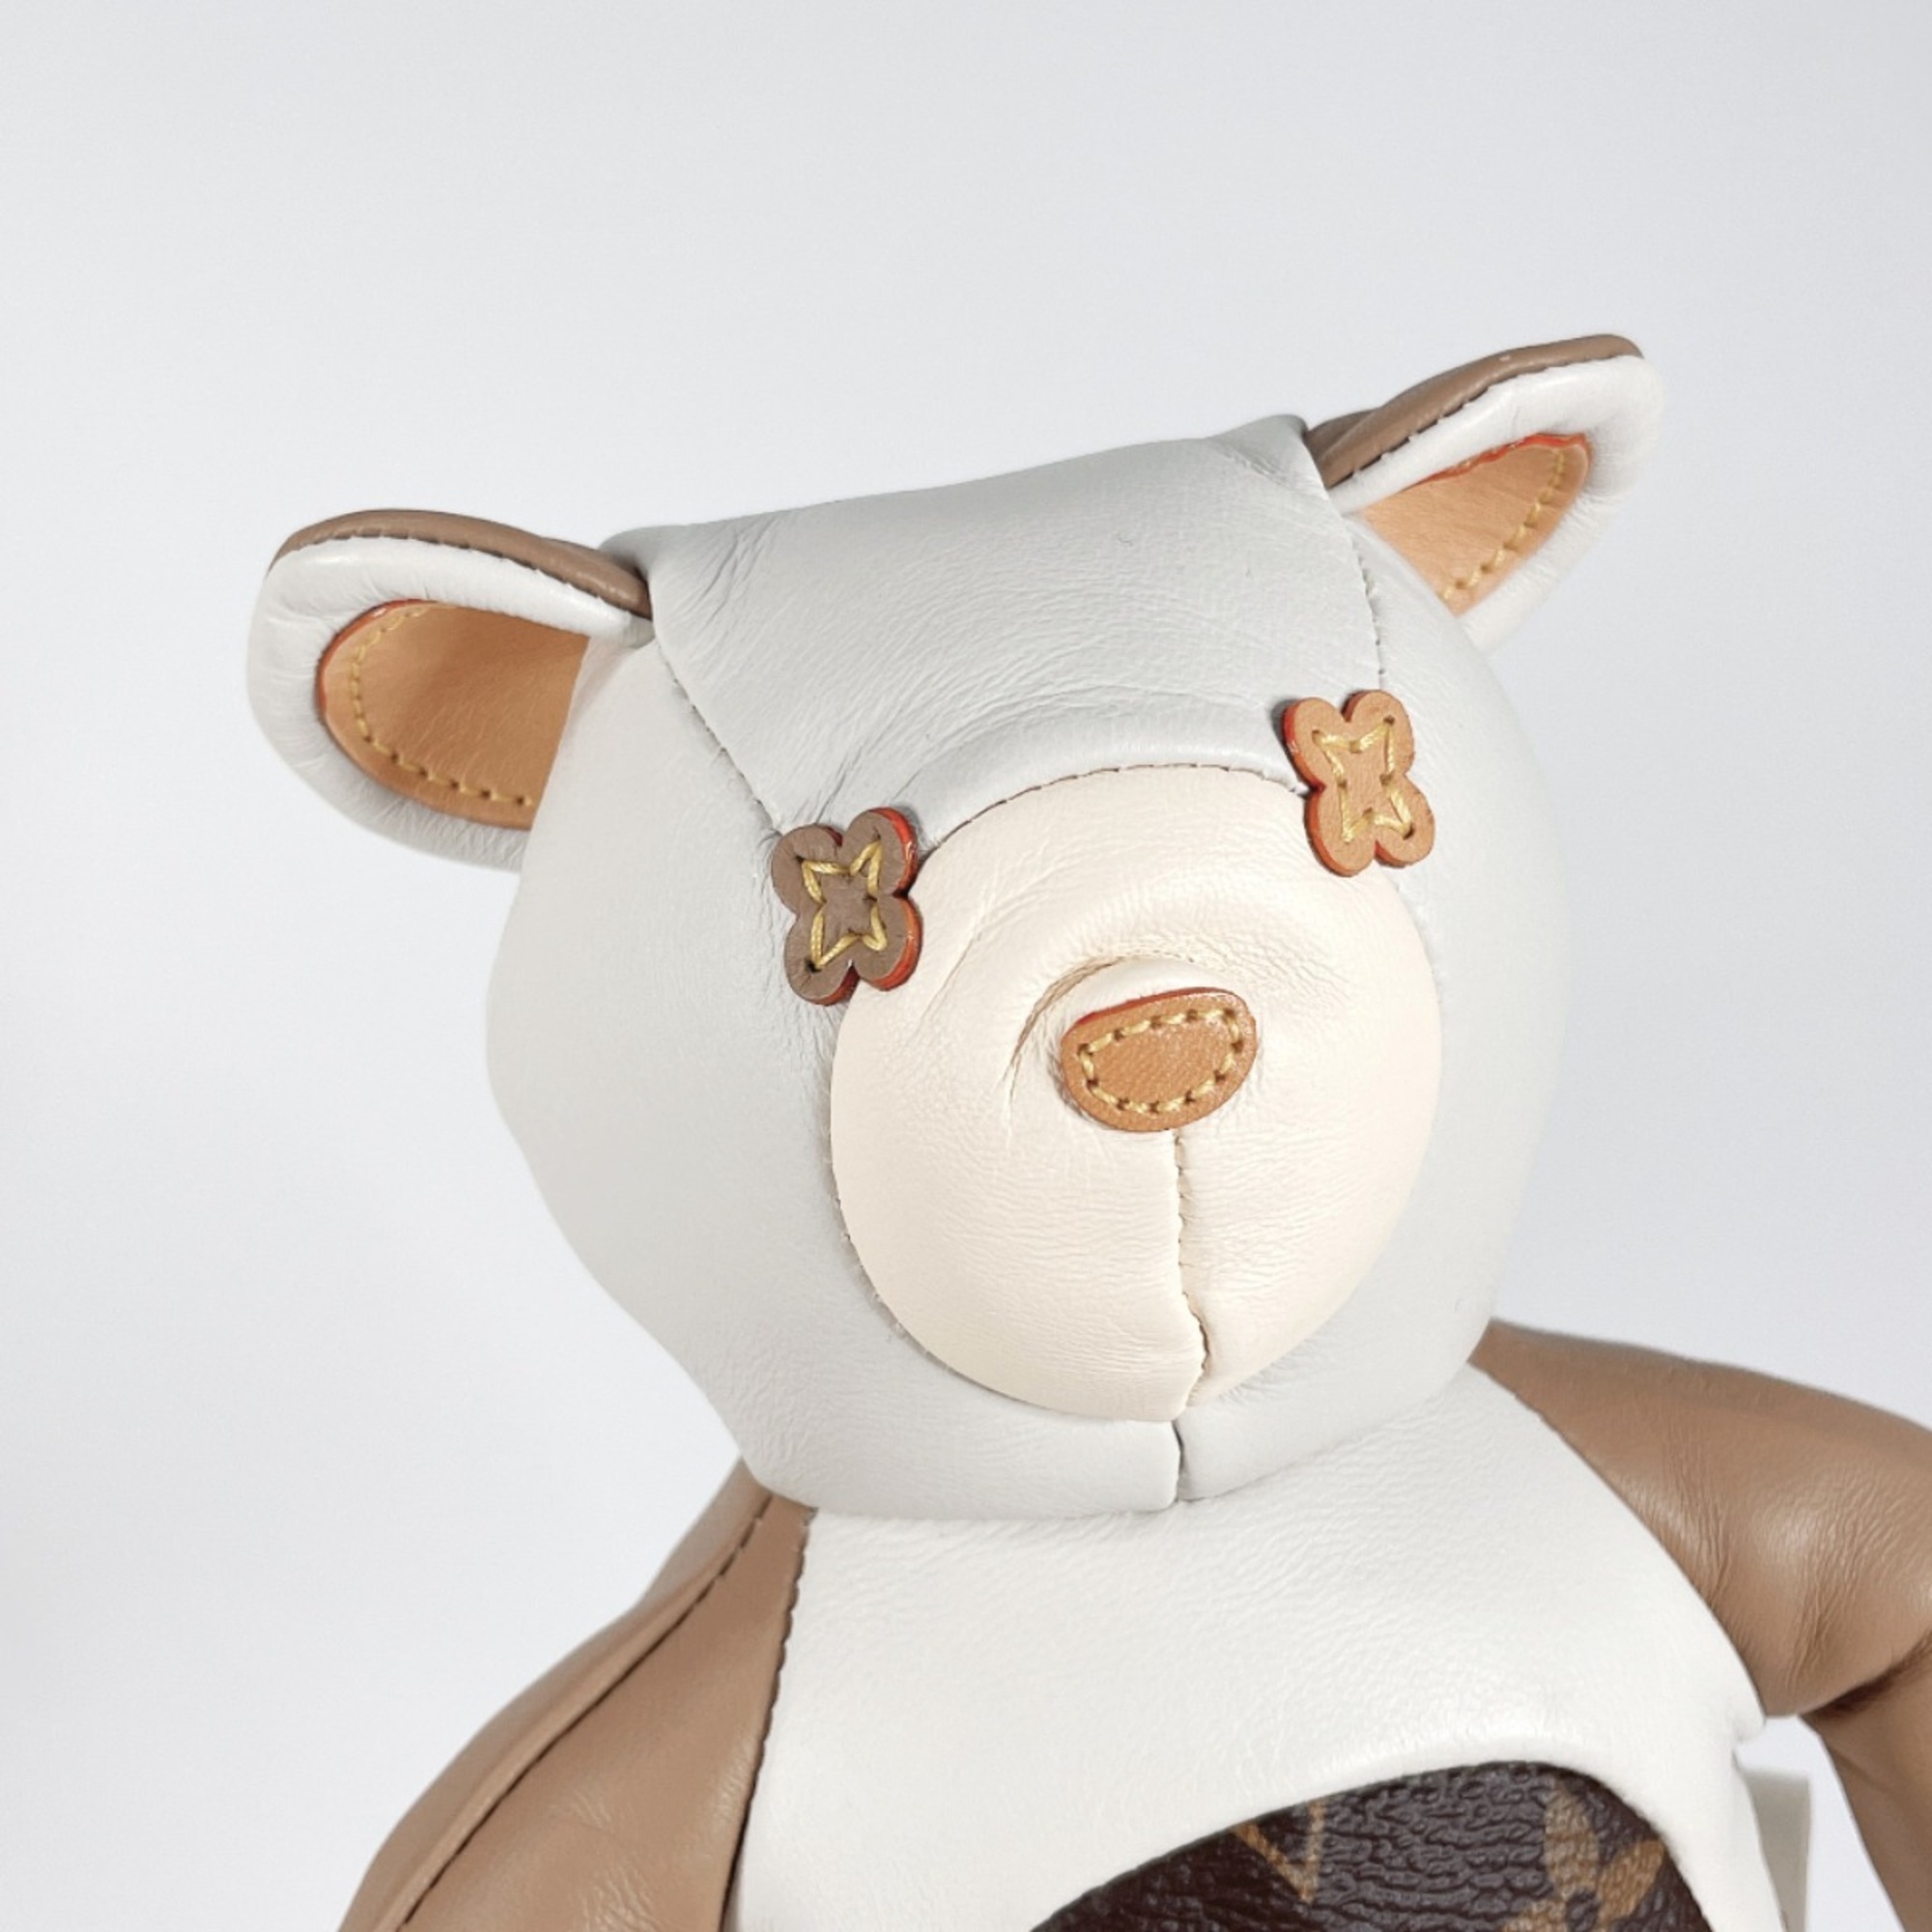 LOUIS VUITTON Louis Vuitton Doudou stuffed toy teddy bear GI0142 miscellaneous goods Monogram canvas leather brown unisex